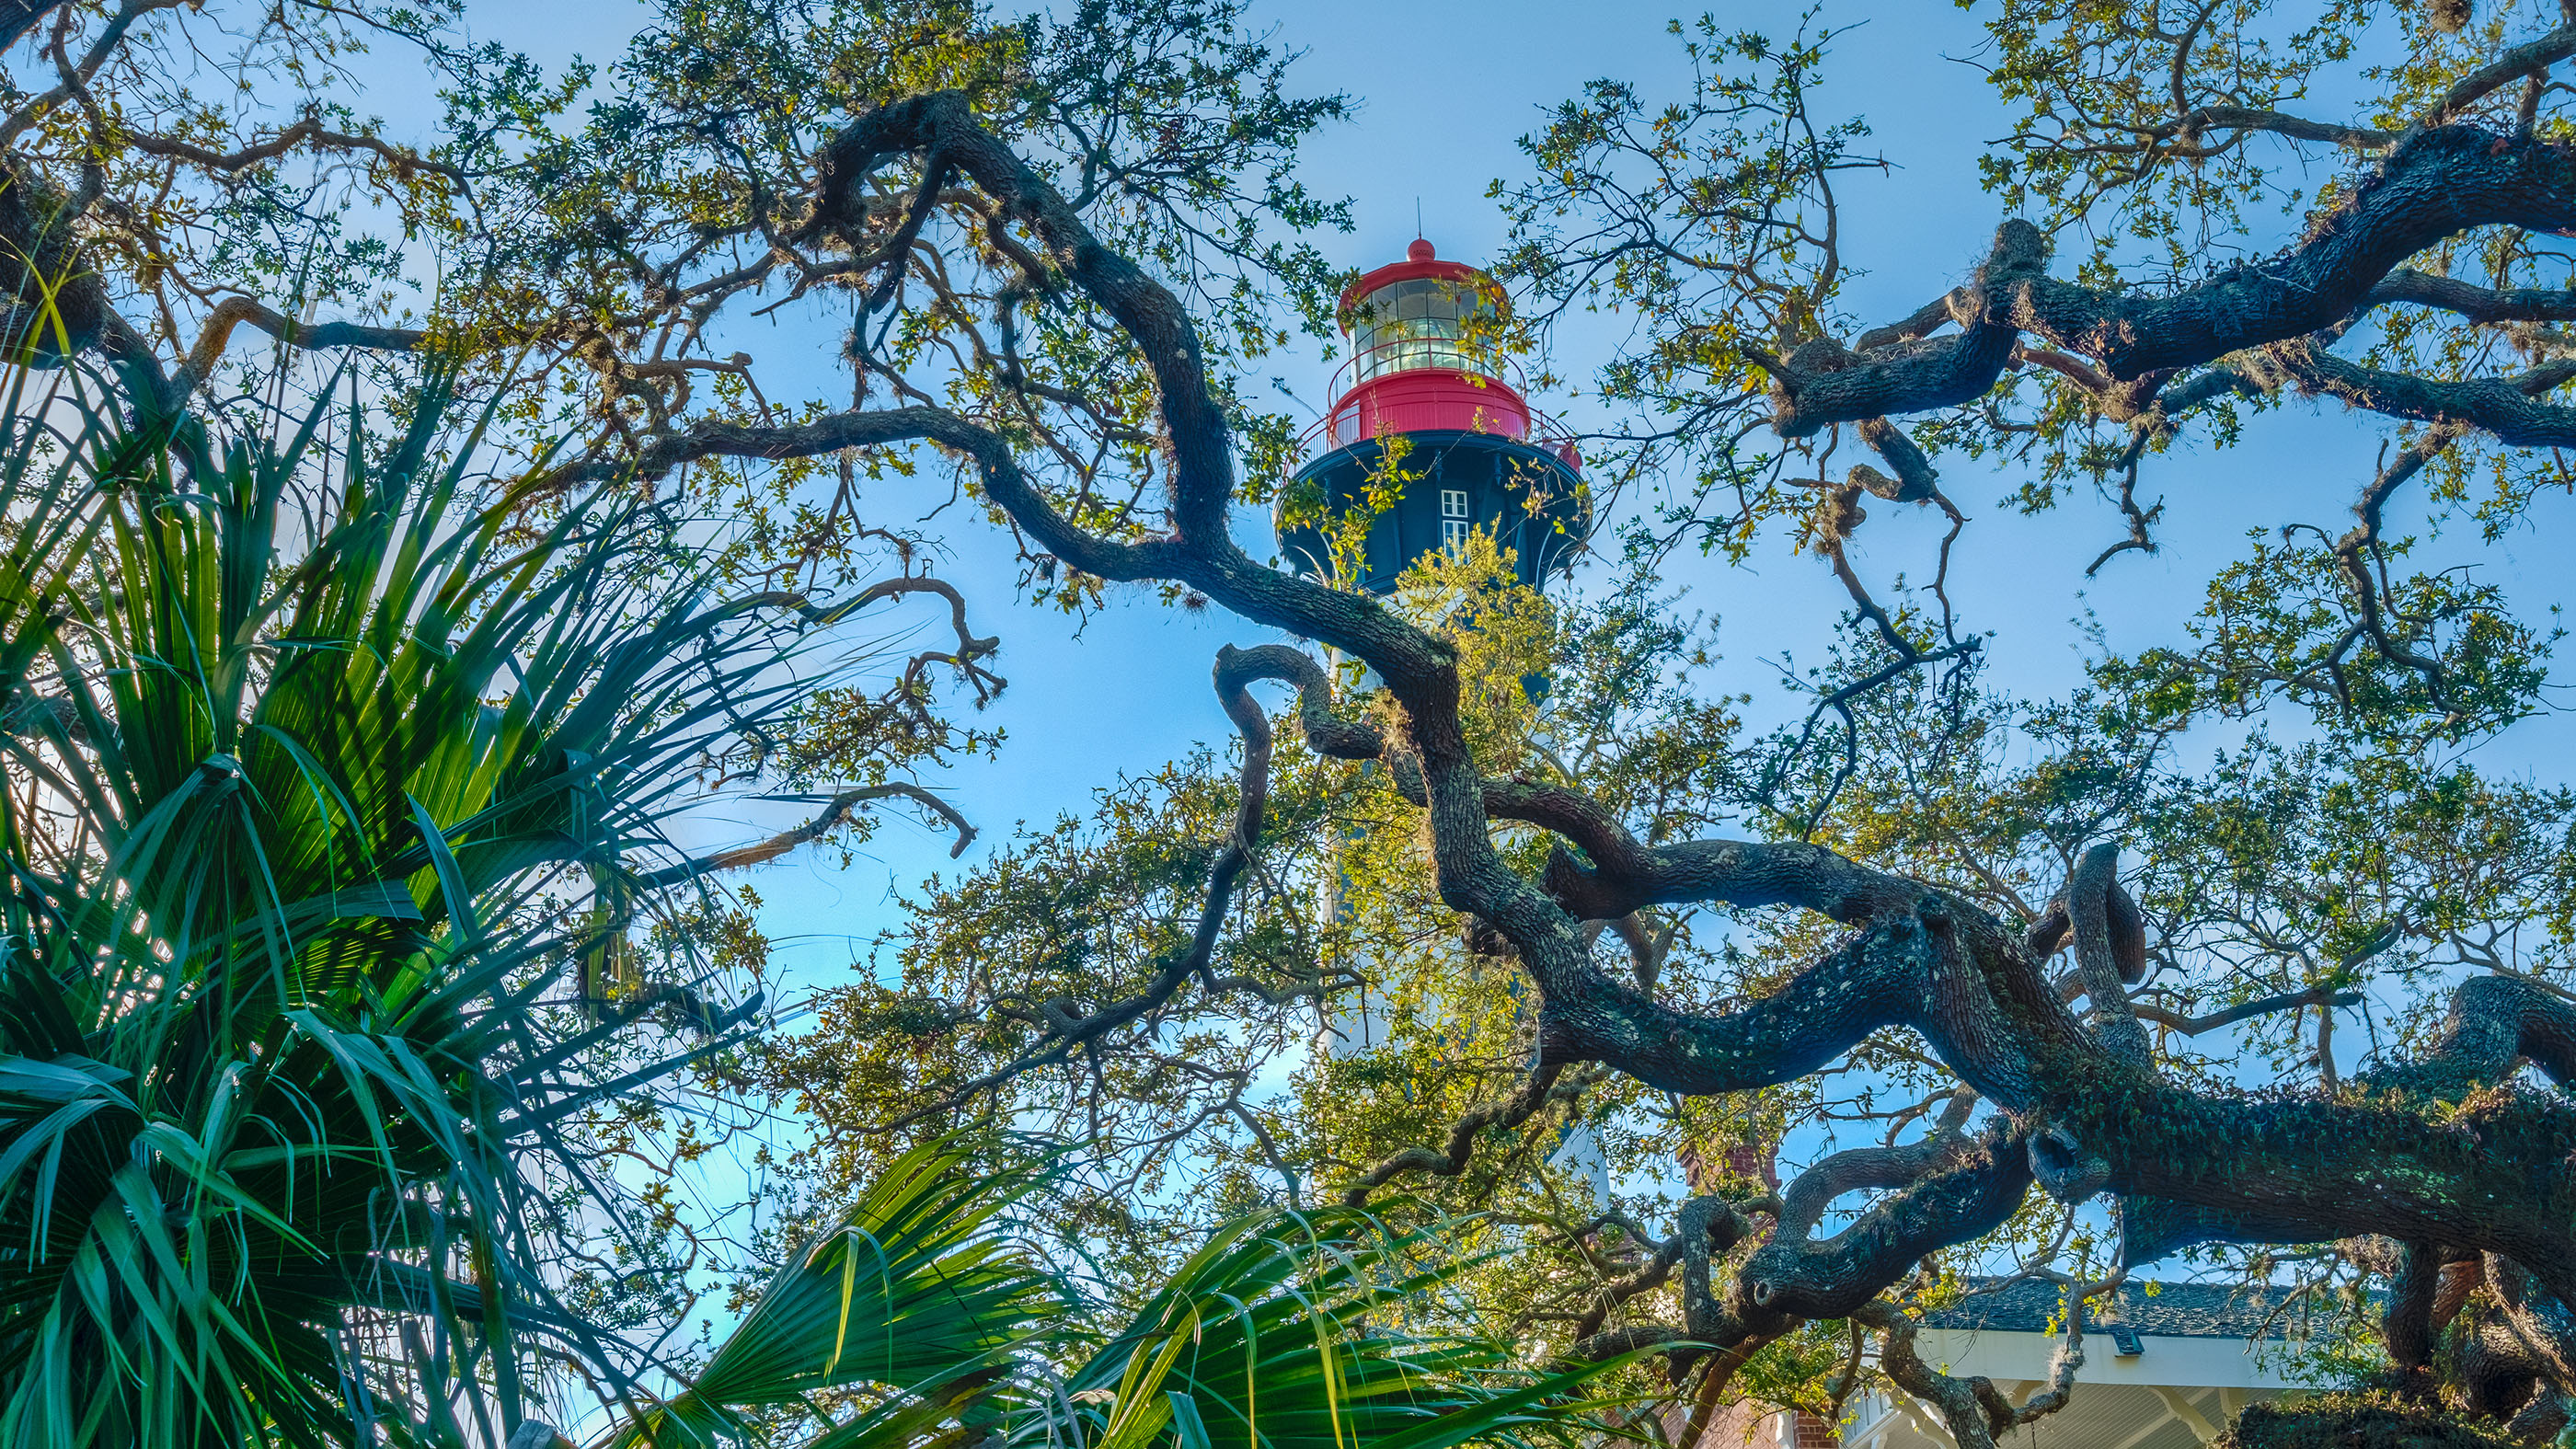 El faro de San Agustín está situado en la isla de la barrera de Anastasia, en Florida.